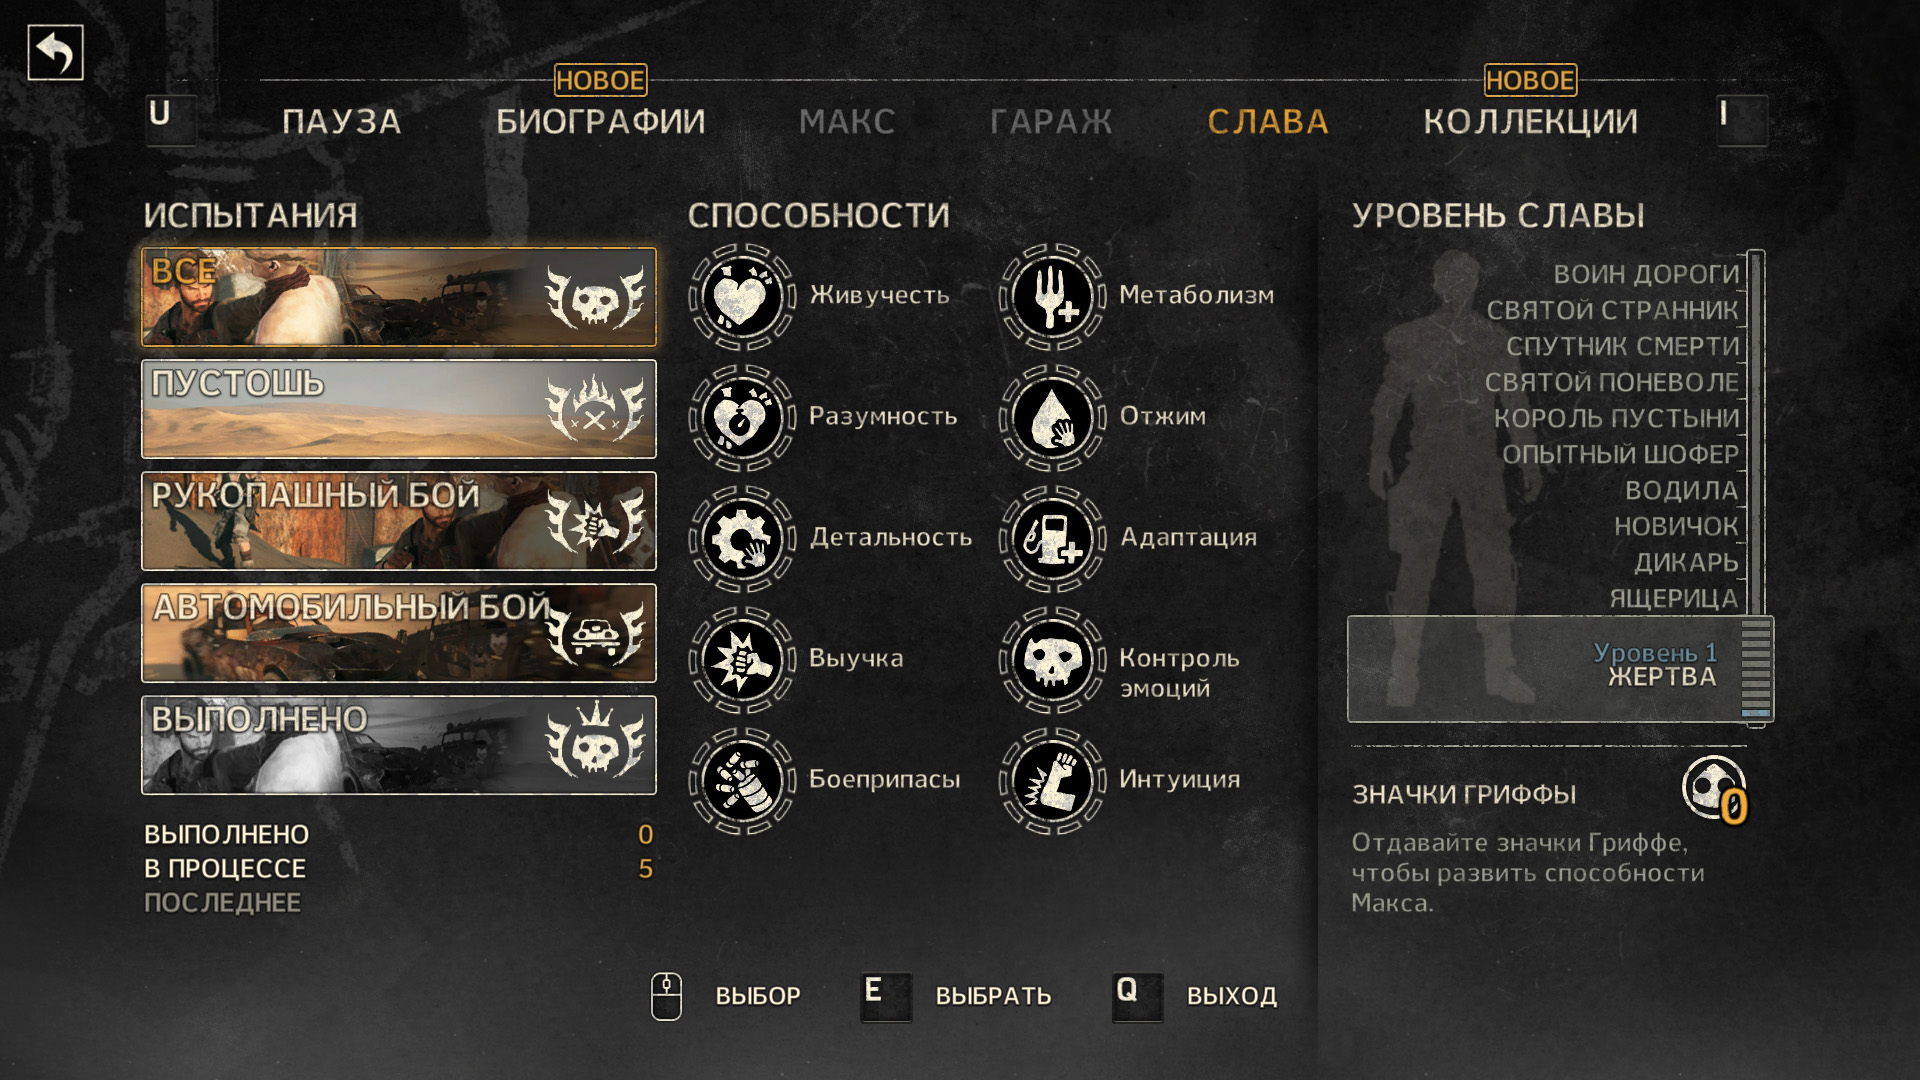 Mad Max [v 1.0.3.0 + DLC's] (2015/PC/Русский), RePack от R.G. Механики